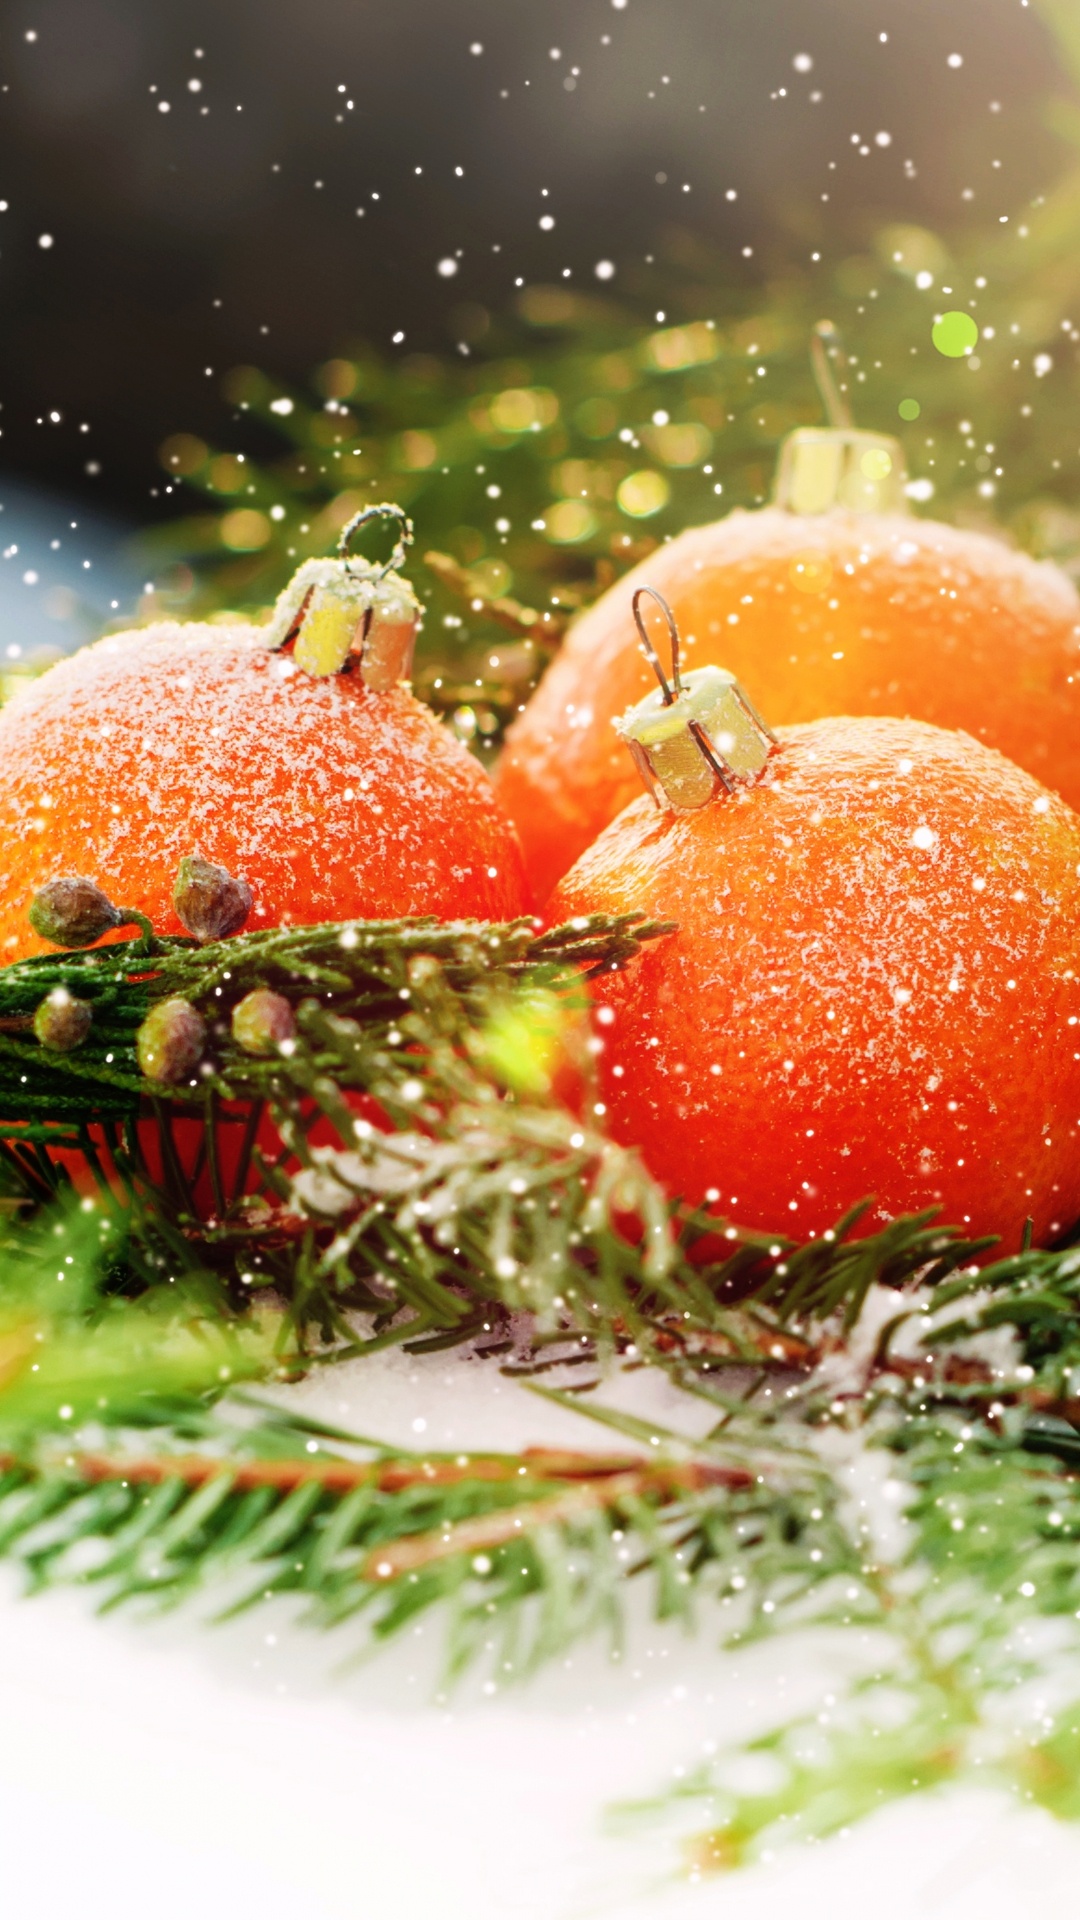 Weihnachten, Neujahr, Vegetarisches Essen, Lebensmittel, Natürliche Lebensmittel. Wallpaper in 1080x1920 Resolution